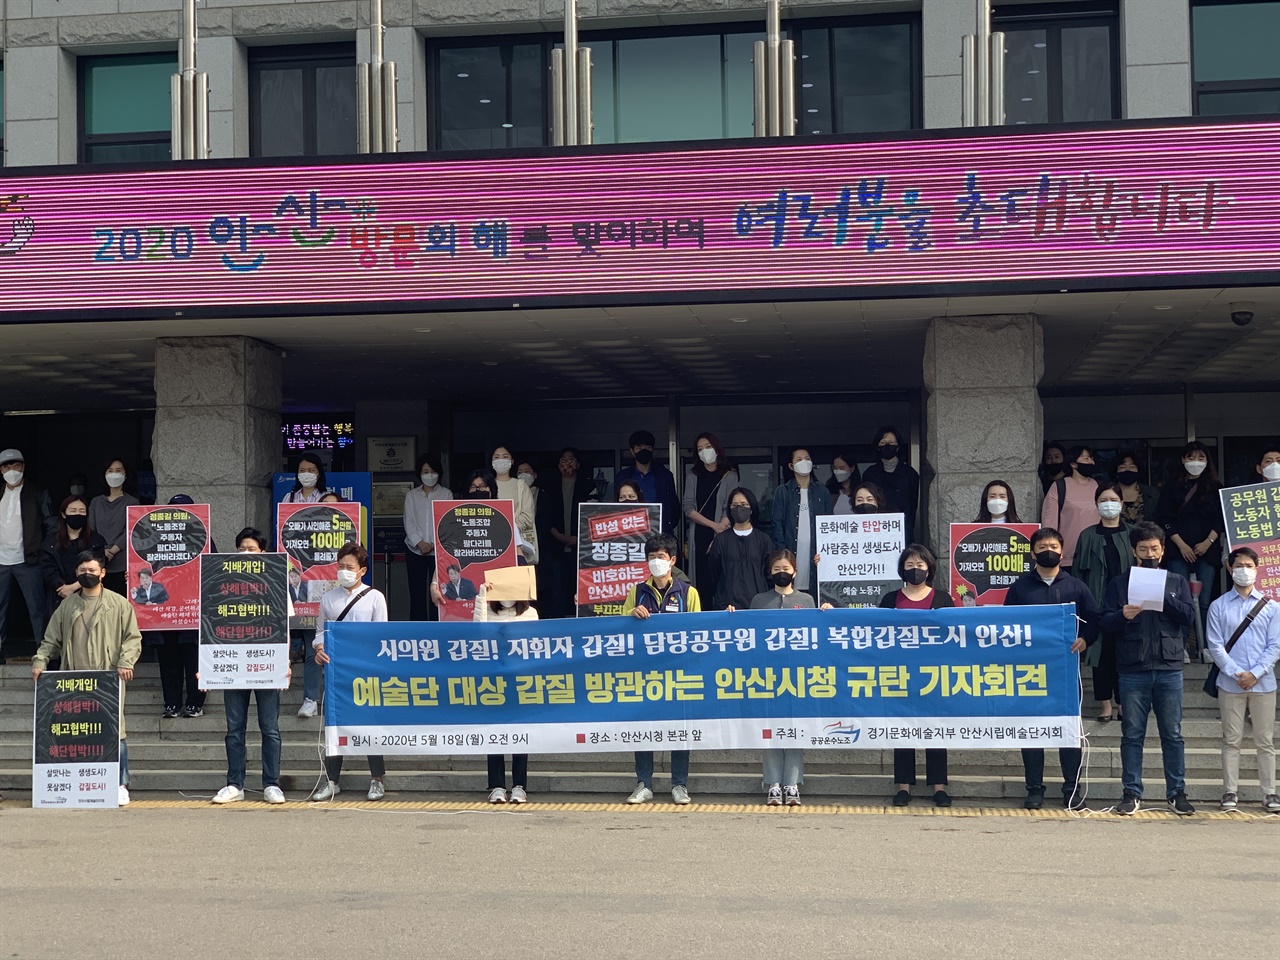 안산시립예술단 노동조합이 ‘안산시청 규탄’ 기자회견을 열고 있다.